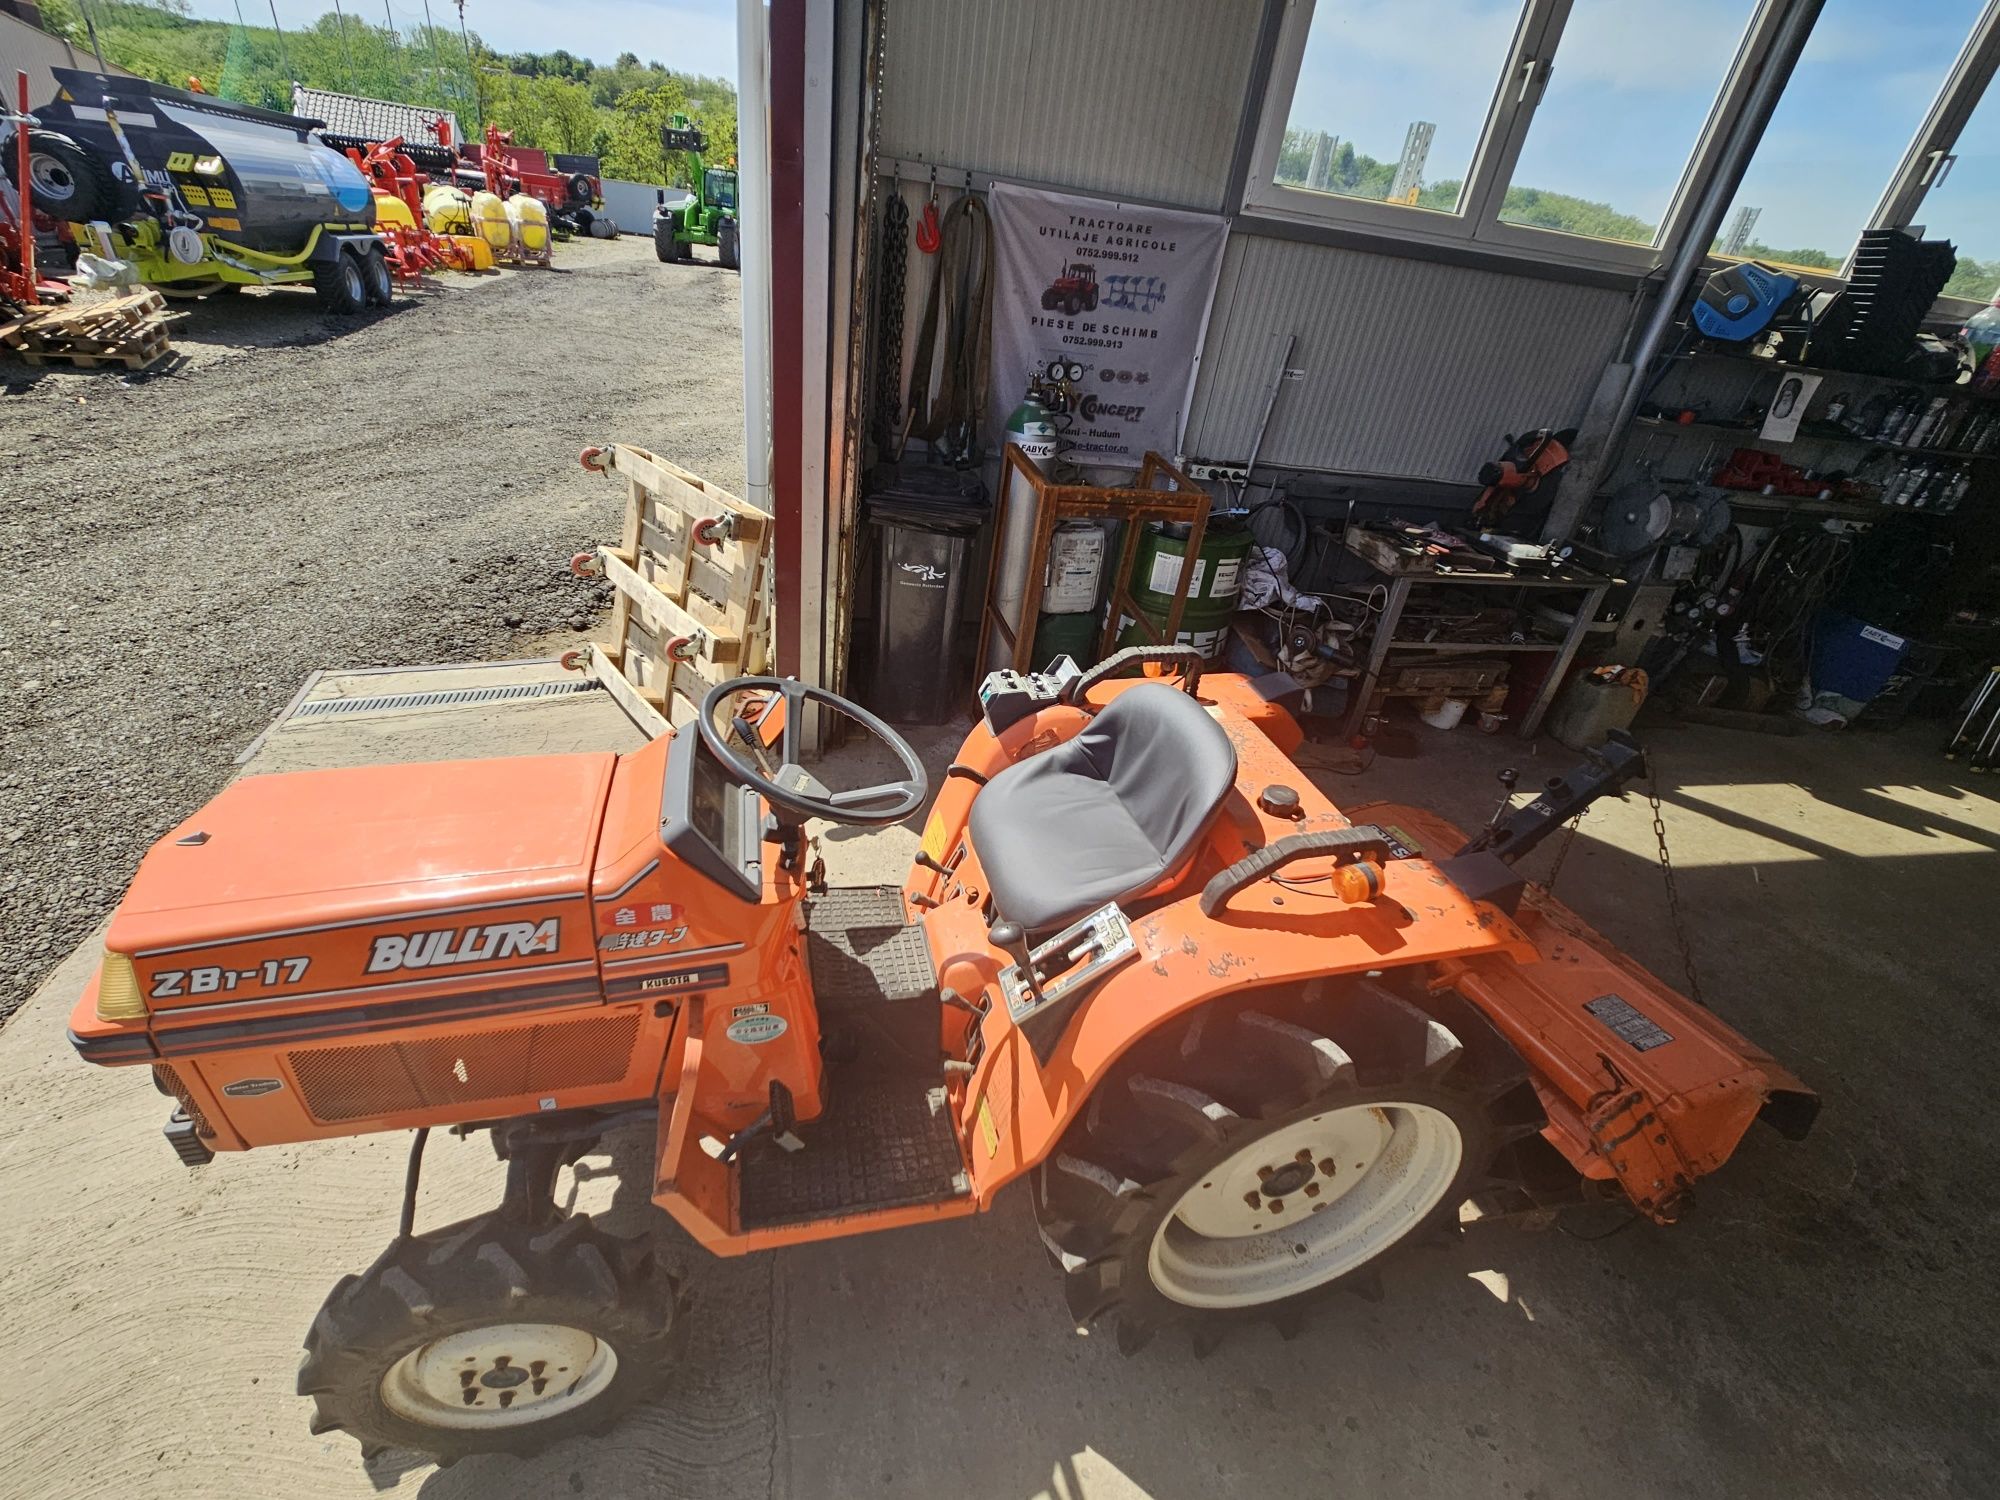 Tractor tractoras minitractor 4x4 17 cai